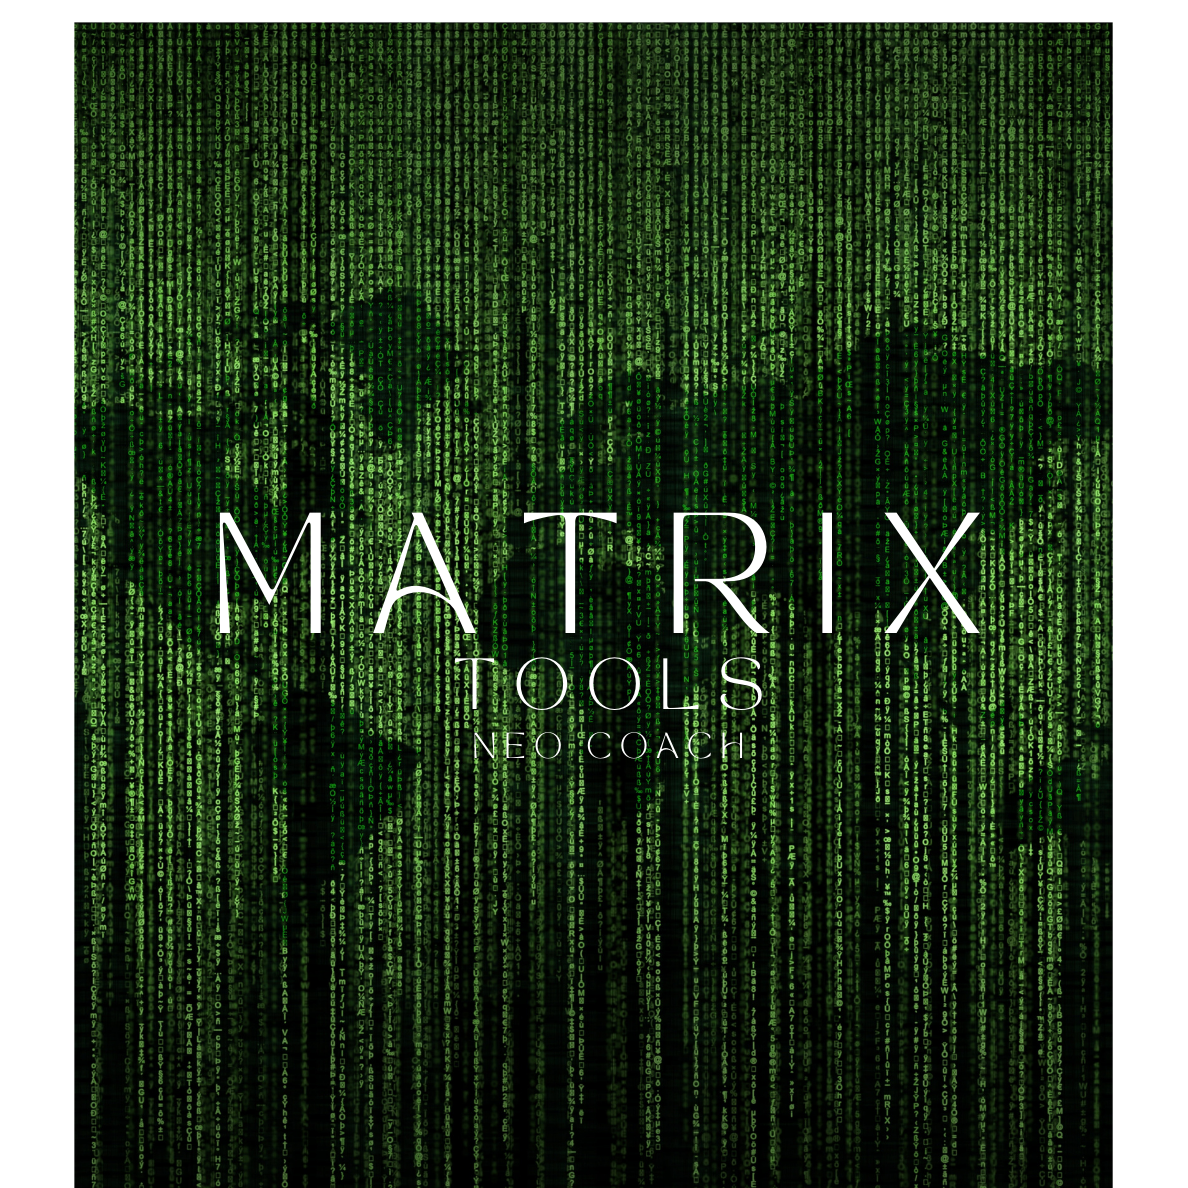 Matrix tools